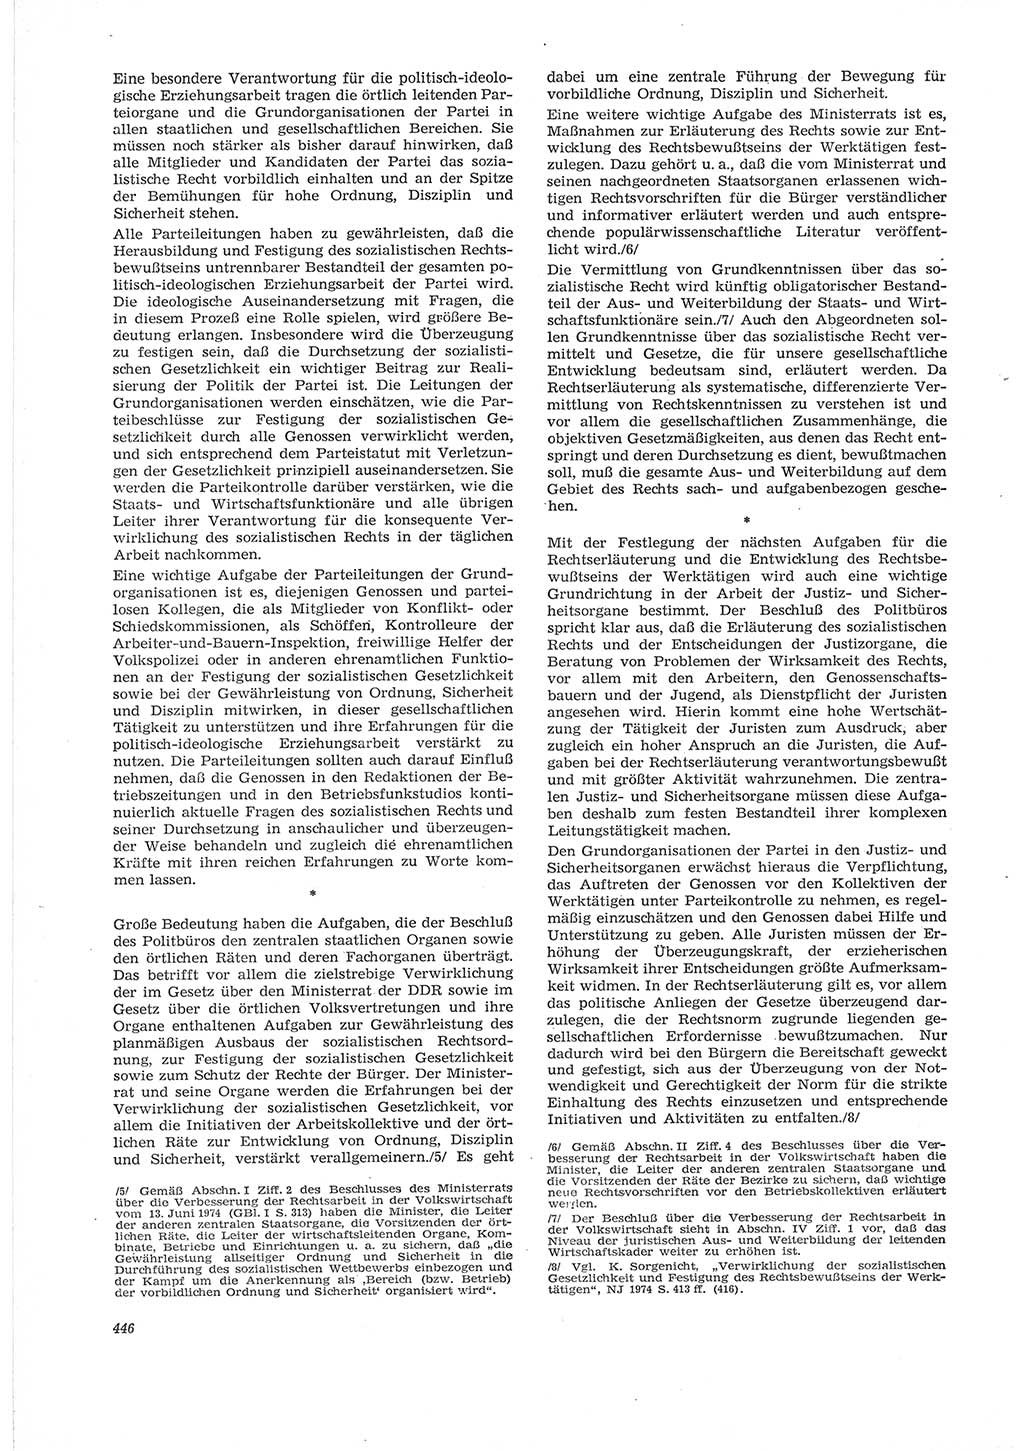 Neue Justiz (NJ), Zeitschrift für Recht und Rechtswissenschaft [Deutsche Demokratische Republik (DDR)], 28. Jahrgang 1974, Seite 446 (NJ DDR 1974, S. 446)